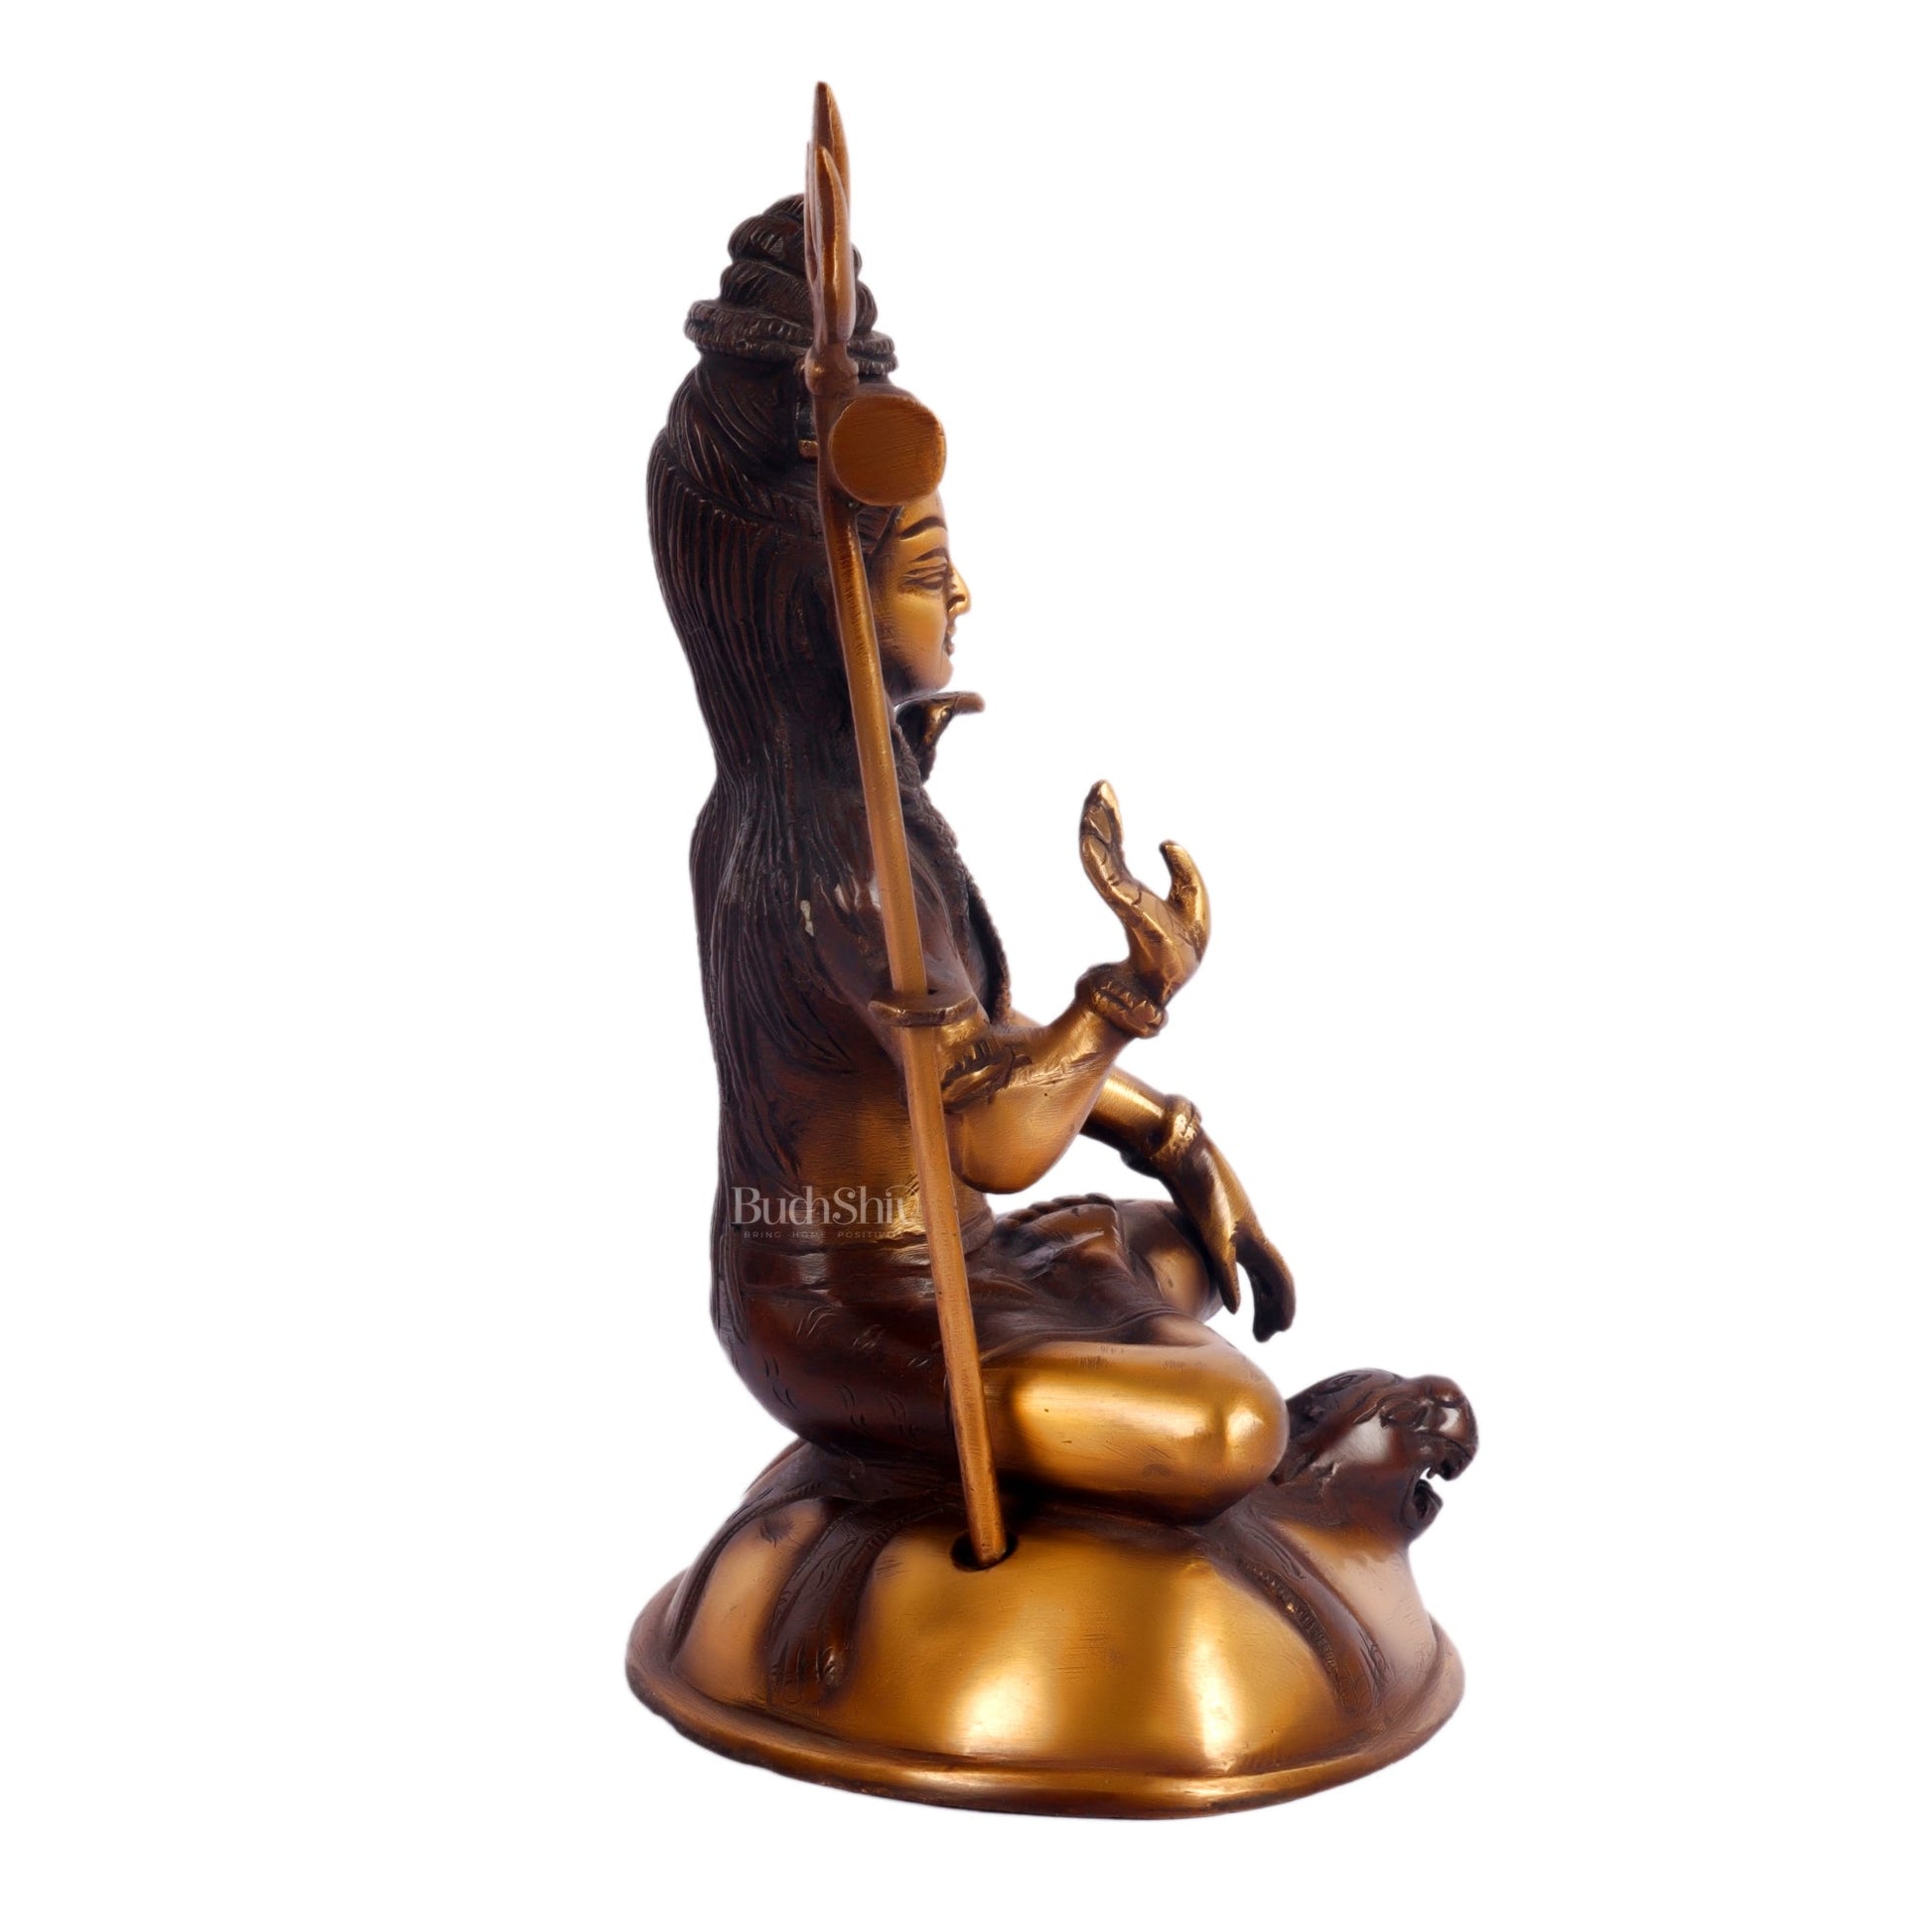 Brass Handcrafted Lord Shiva Statue | Jatadhaari Shiva | 7.5" Height - Budhshiv.com